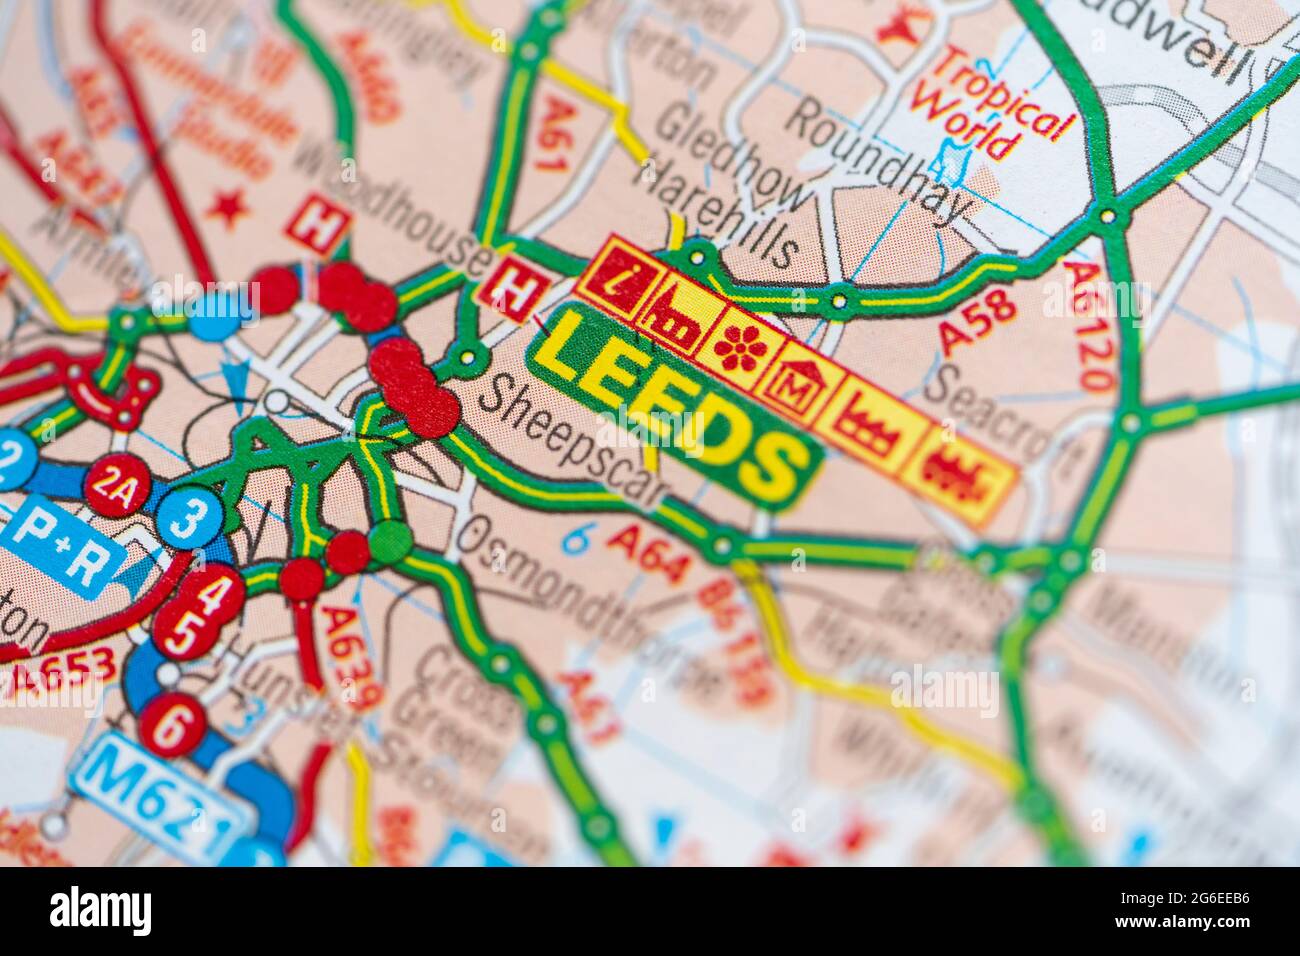 Eine Makroaufnahme einer Seite in einem gedruckten Roadmap-Atlas, der die Stadt Leeds in der Grafschaft West Yorkshire, England, zeigt Stockfoto